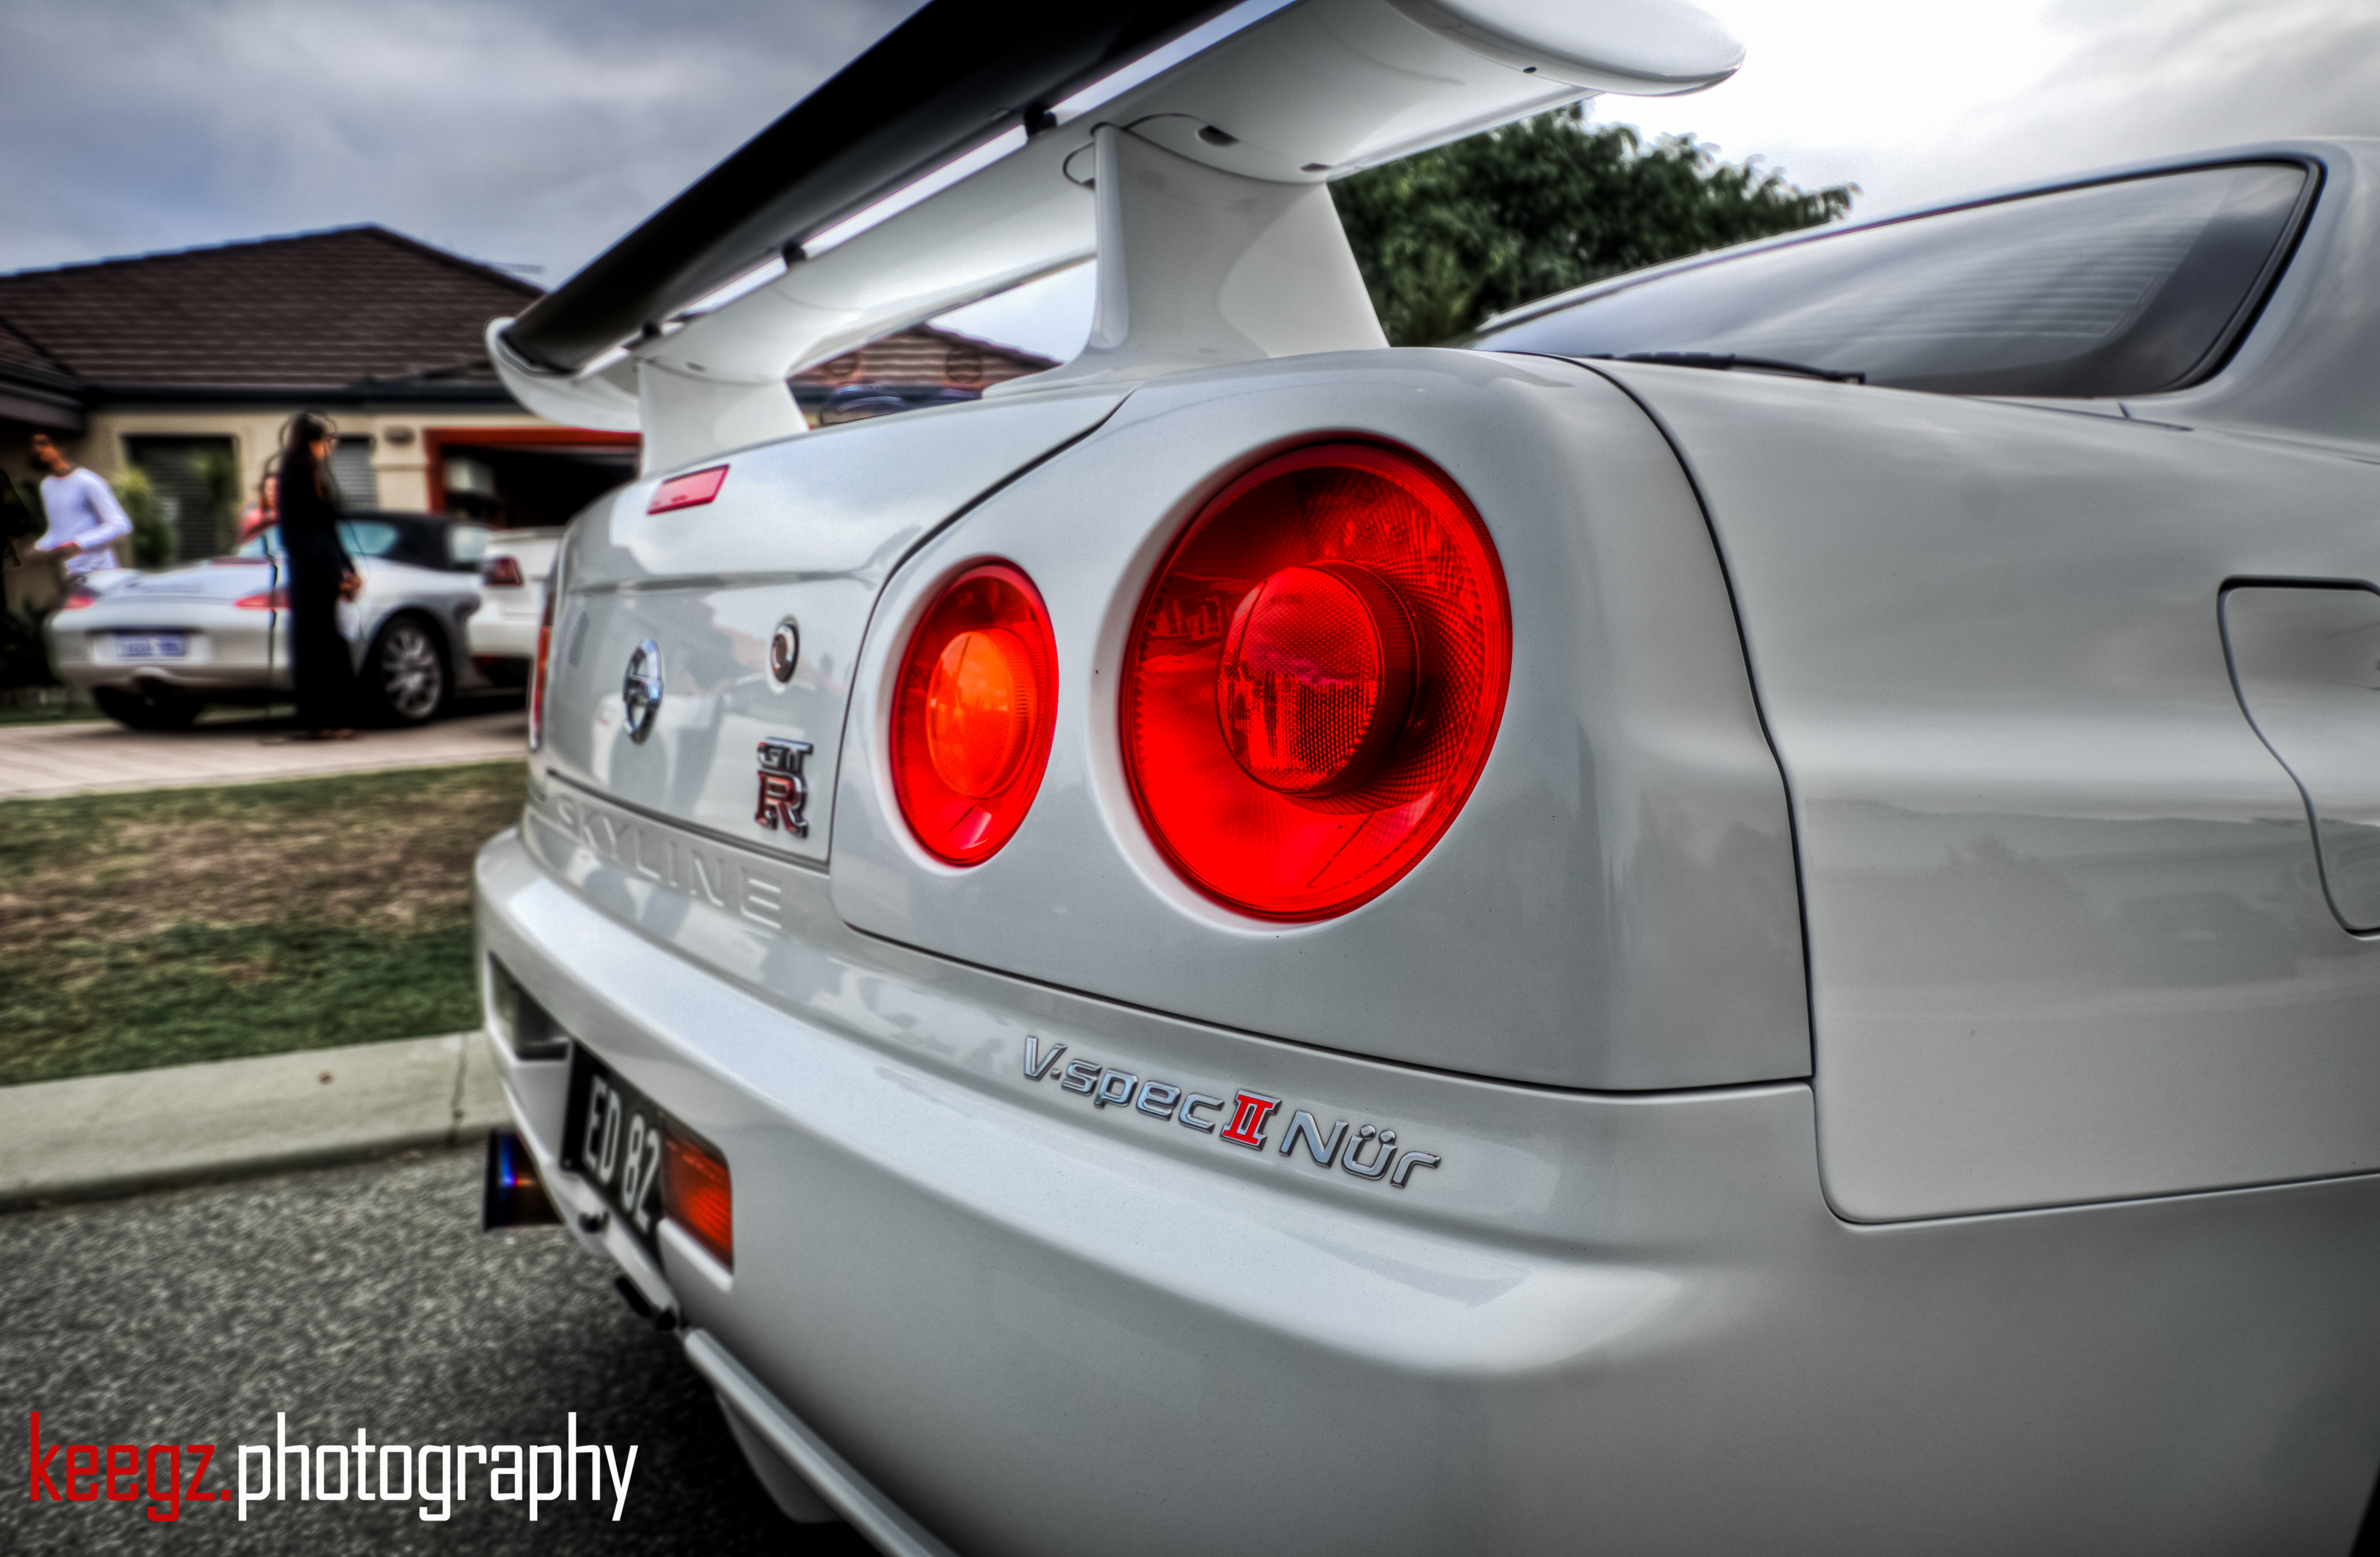 Nissan Skyline GT-R V-spec II Nur (2) | Flickr - Photo Sharing!